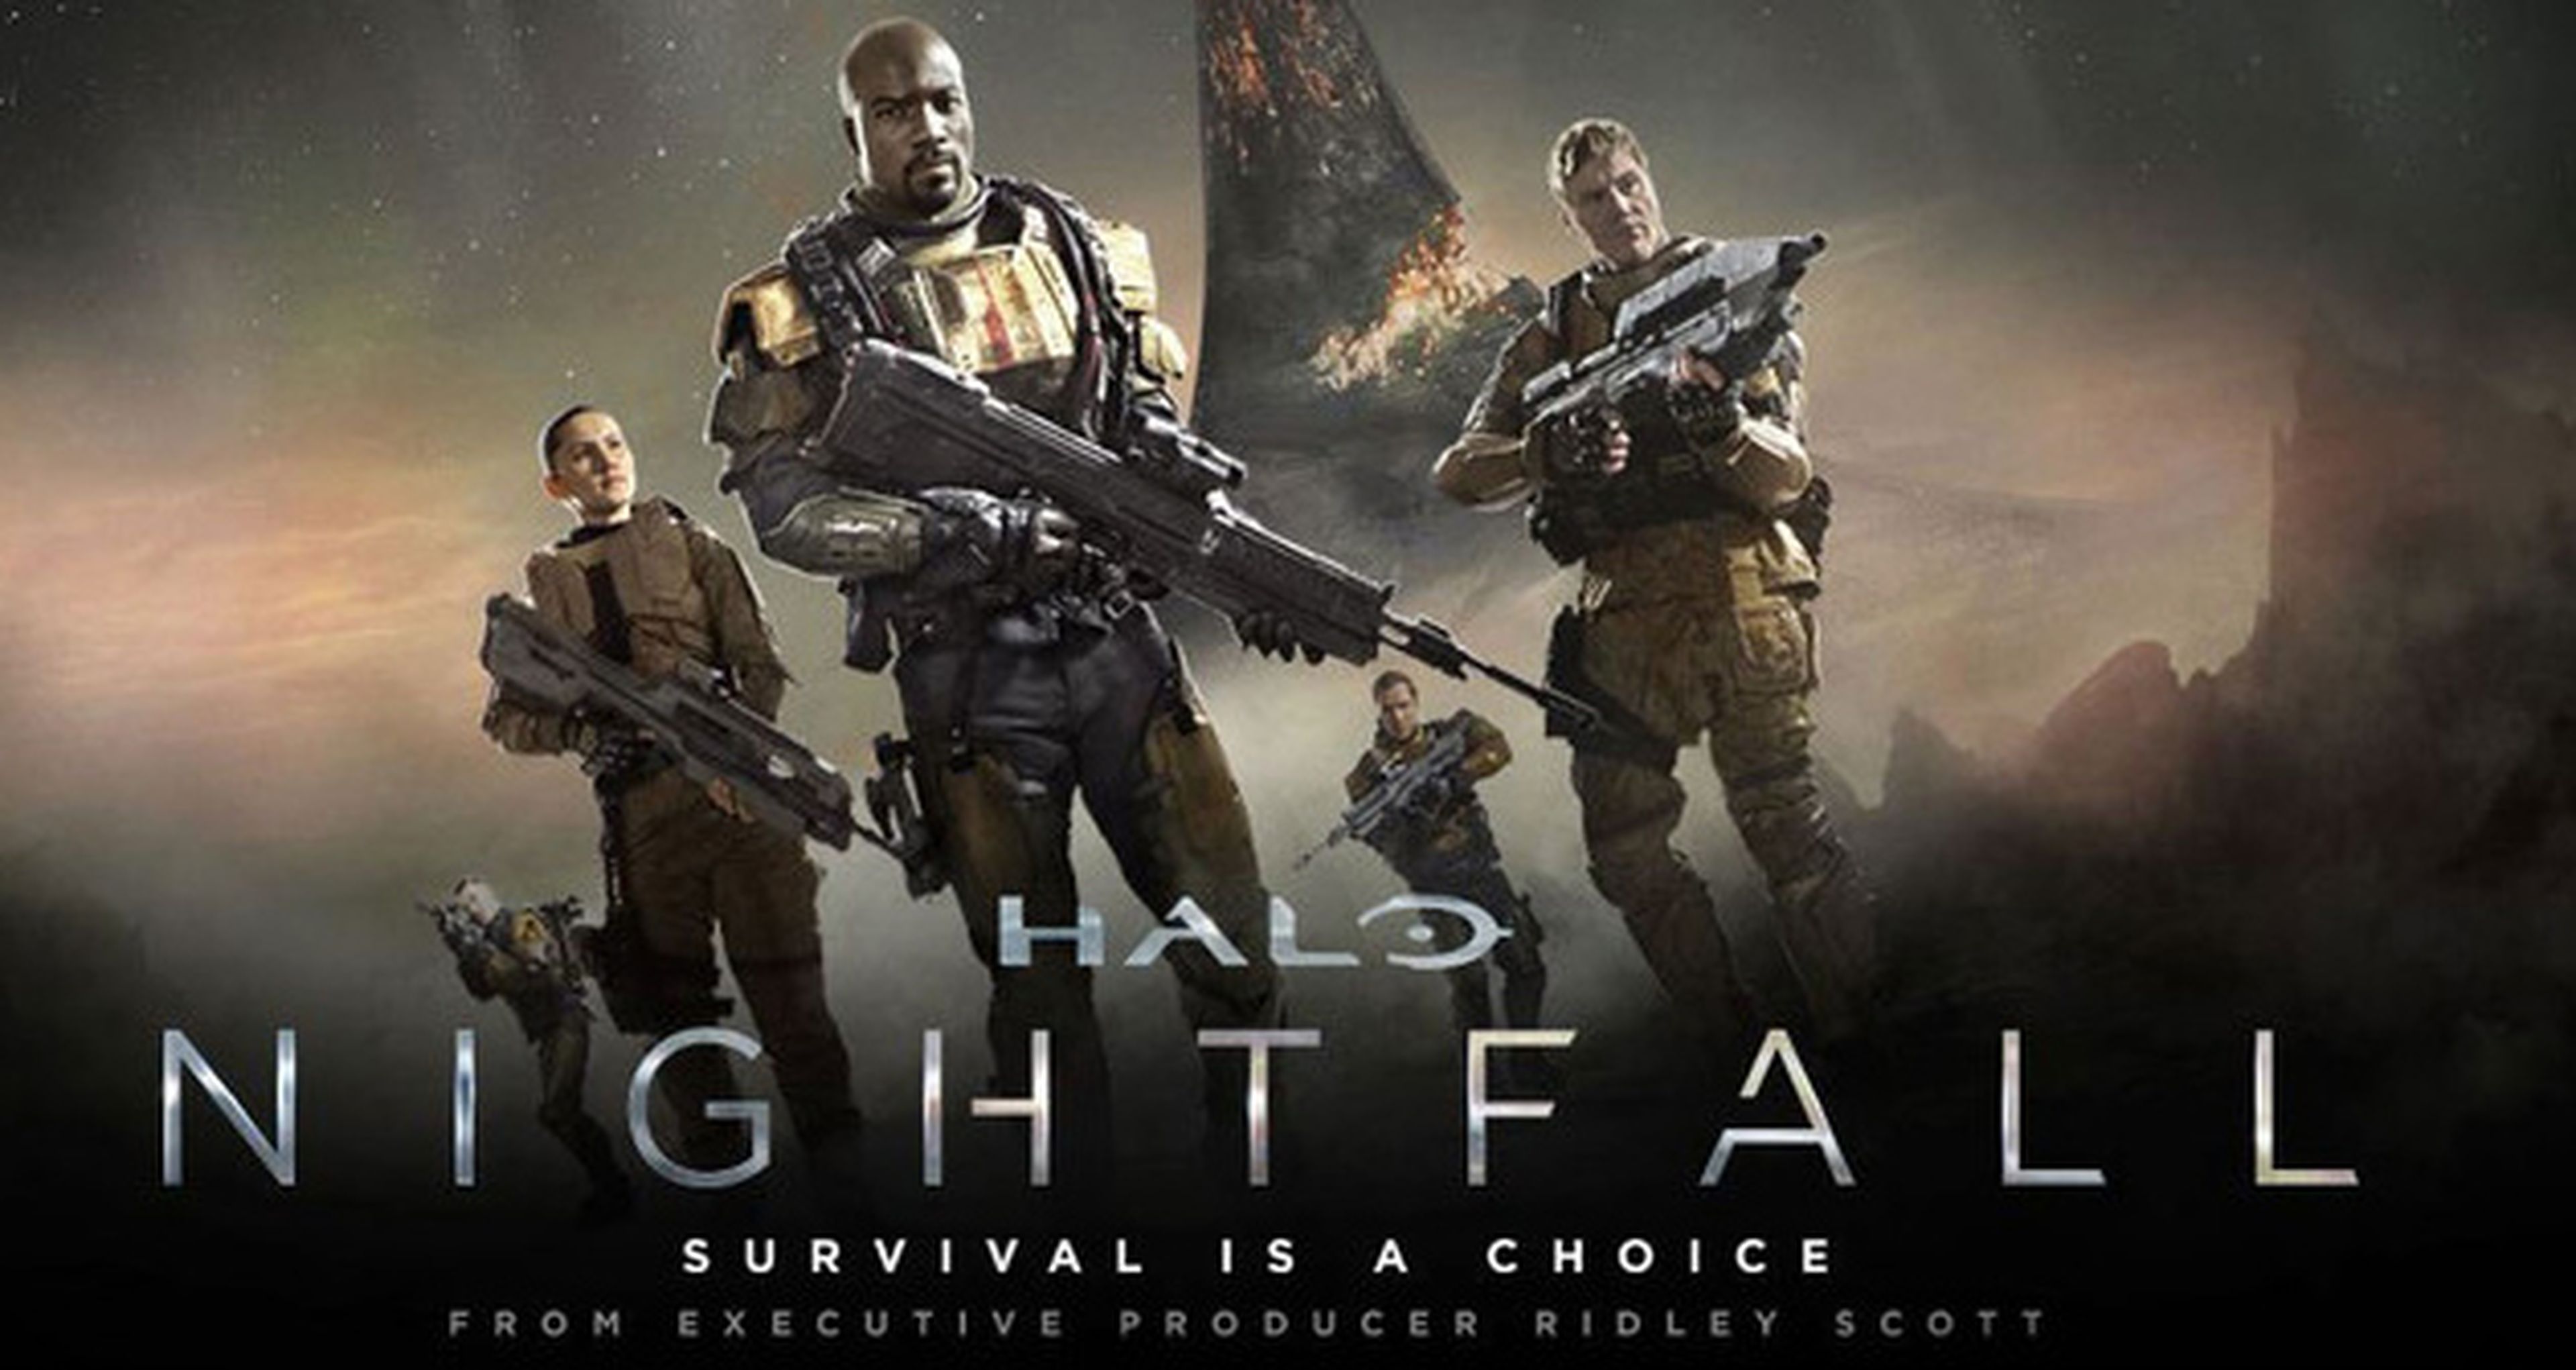 La serie Halo Nightfall llega doblada en español neutro